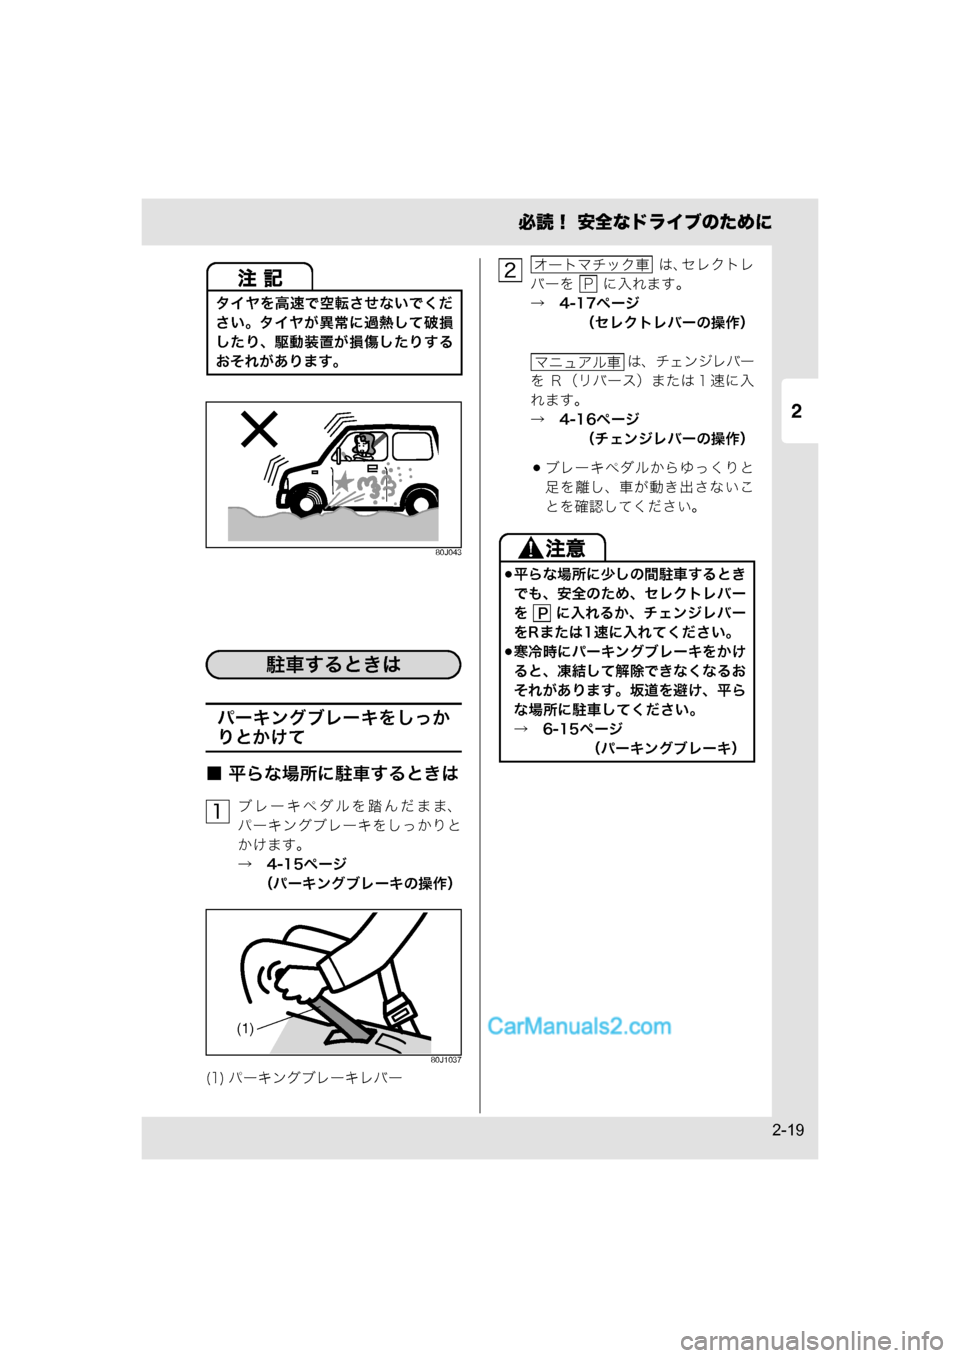 MAZDA MODEL CARROL 2015  取扱説明書 (キャロル) (in Japanese) 2
必読！ 安全なドライブのために
2-19
80J043
パーキングブレーキをしっか
りとかけて
■ 平らな場所に駐車するときは
ブレーキペダルを踏んだまま、